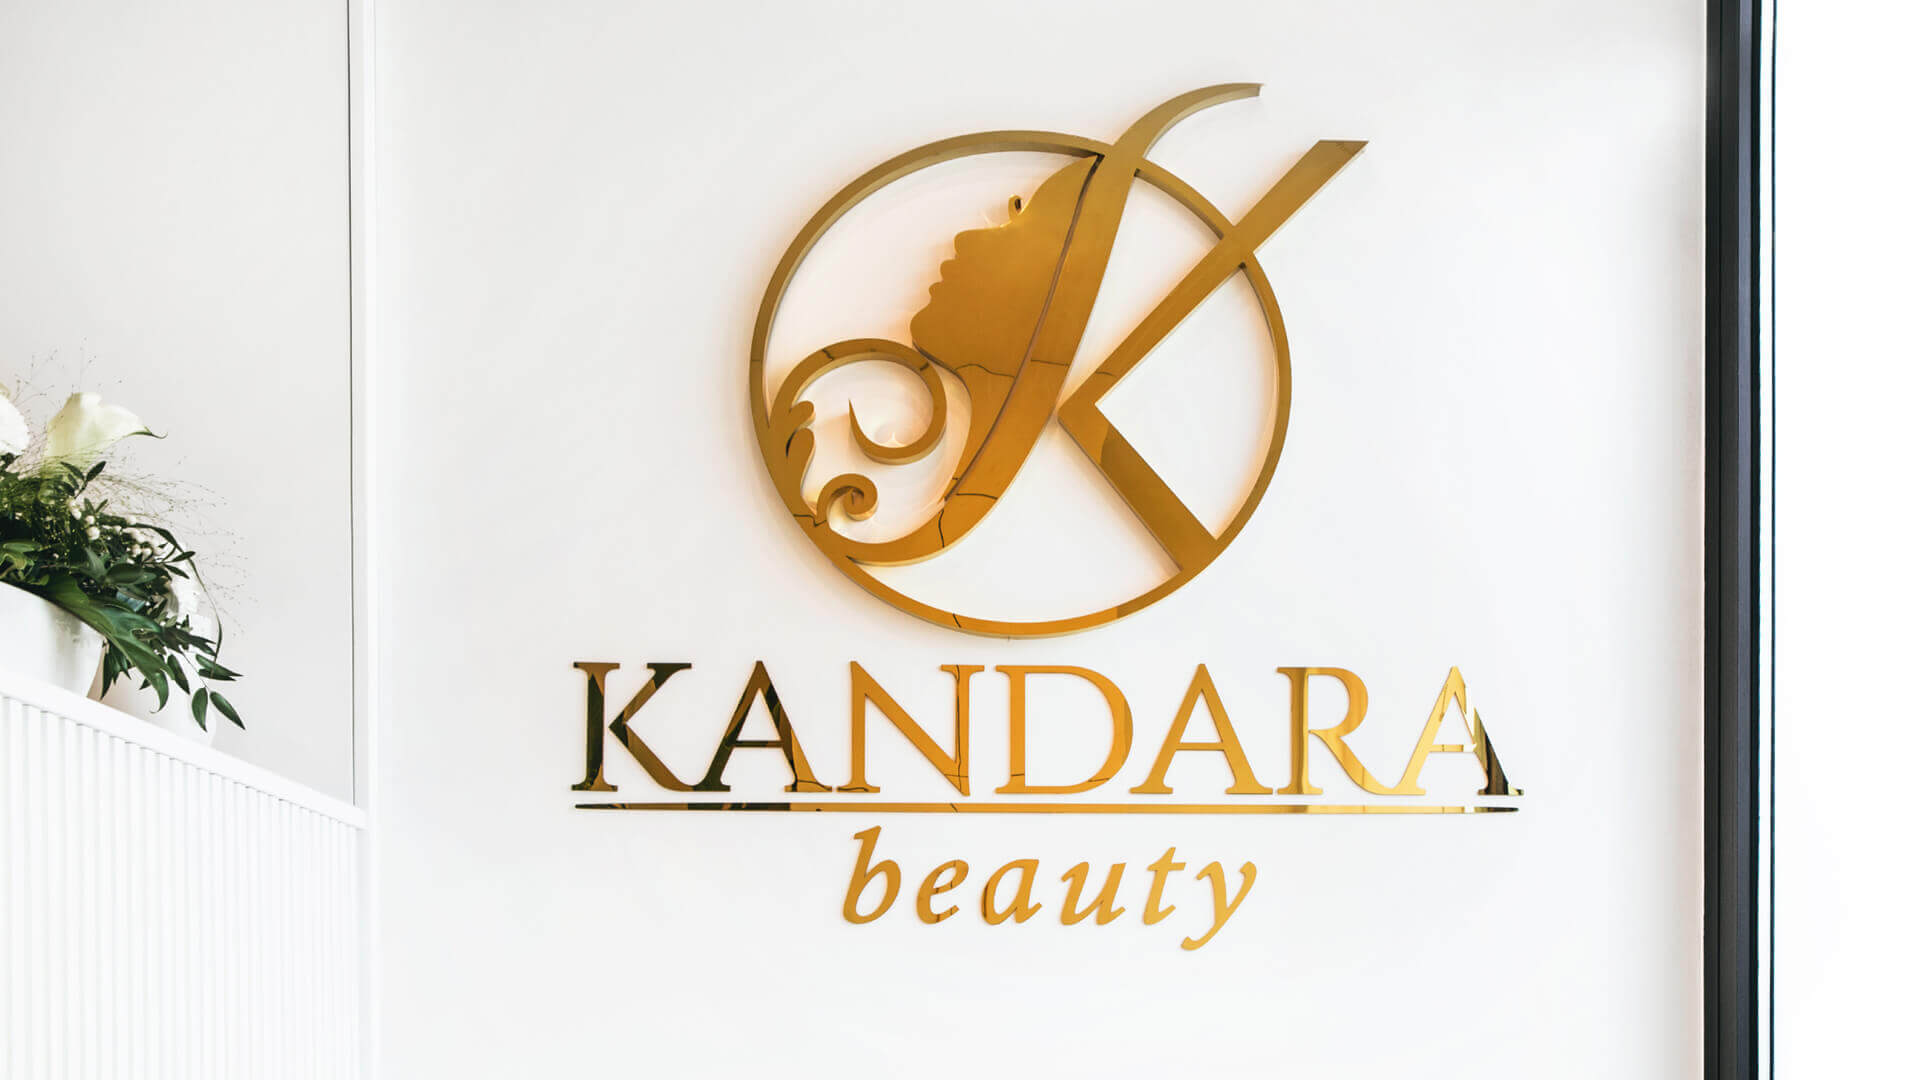 Kandara bellezza - Logo con nome in acciaio inossidabile dorato.